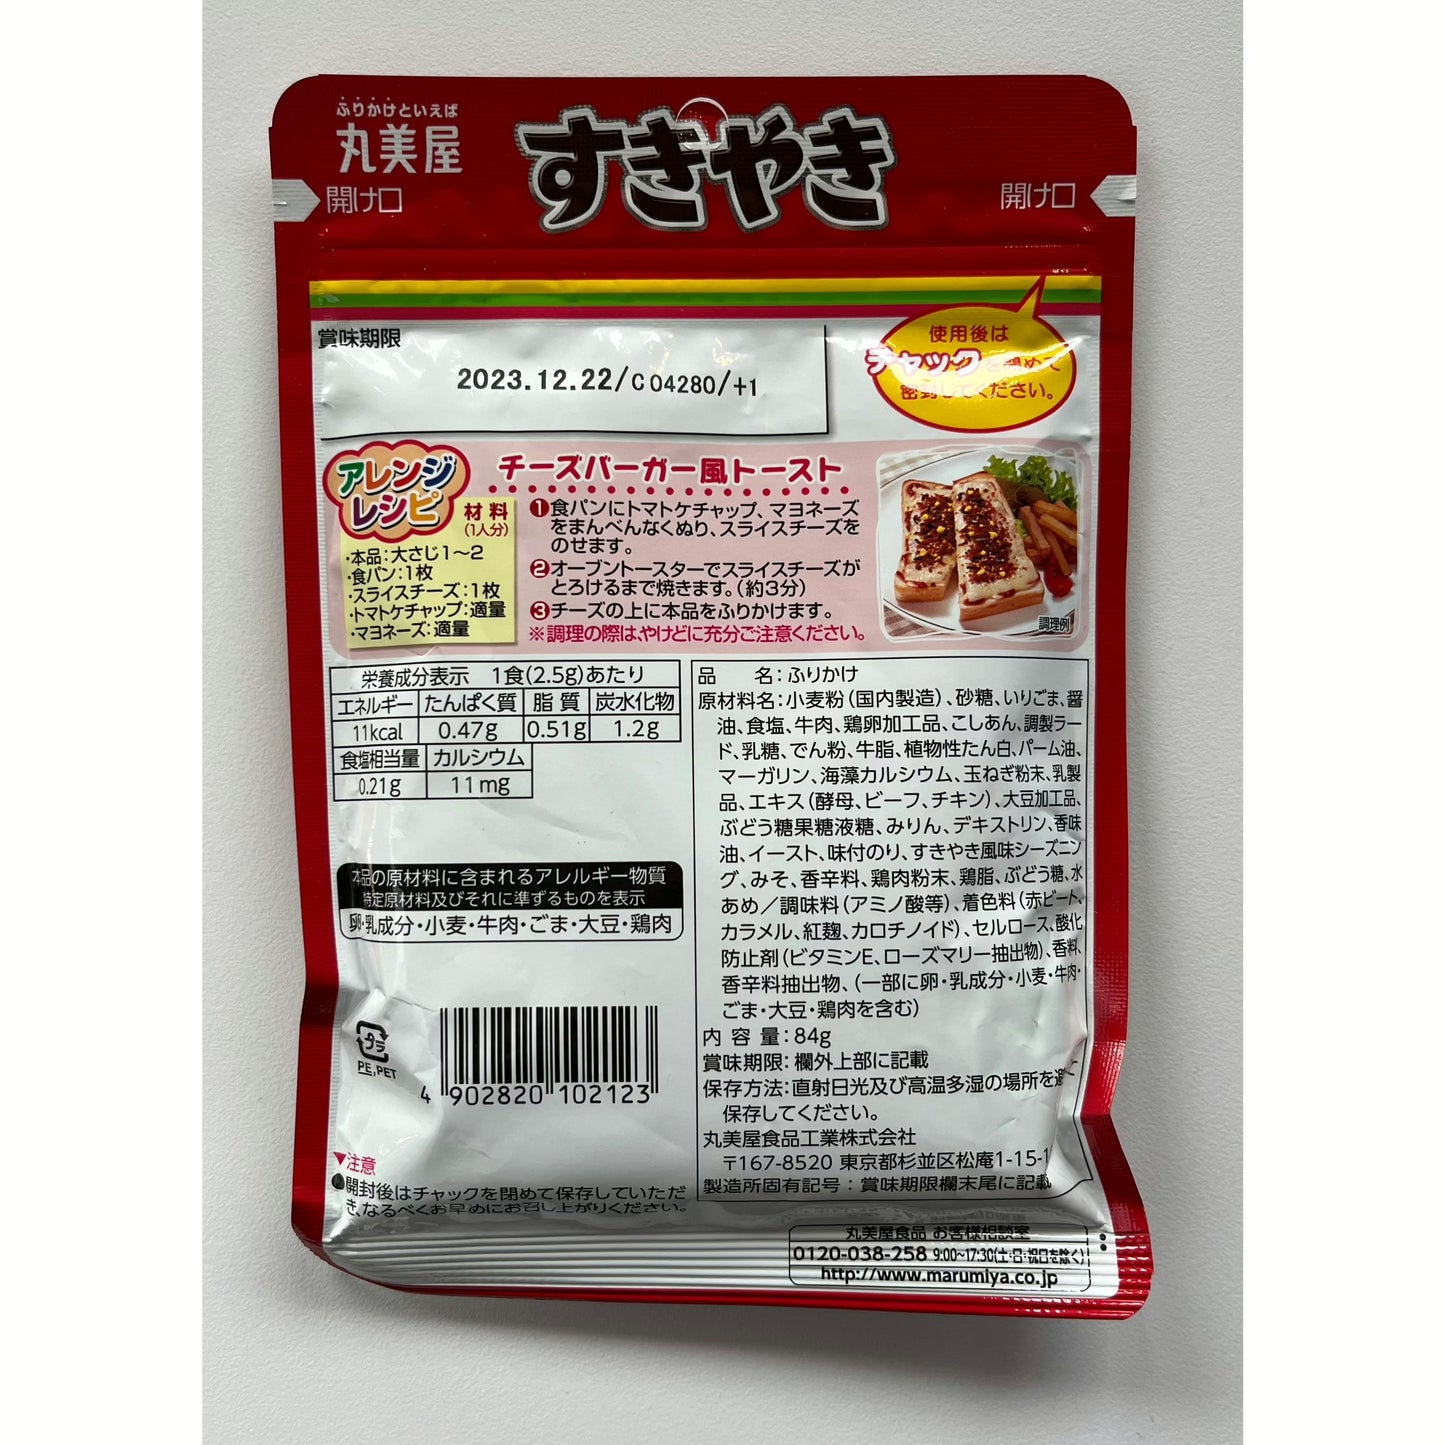 Marumiya Beef "Sukiyaki" Furikake